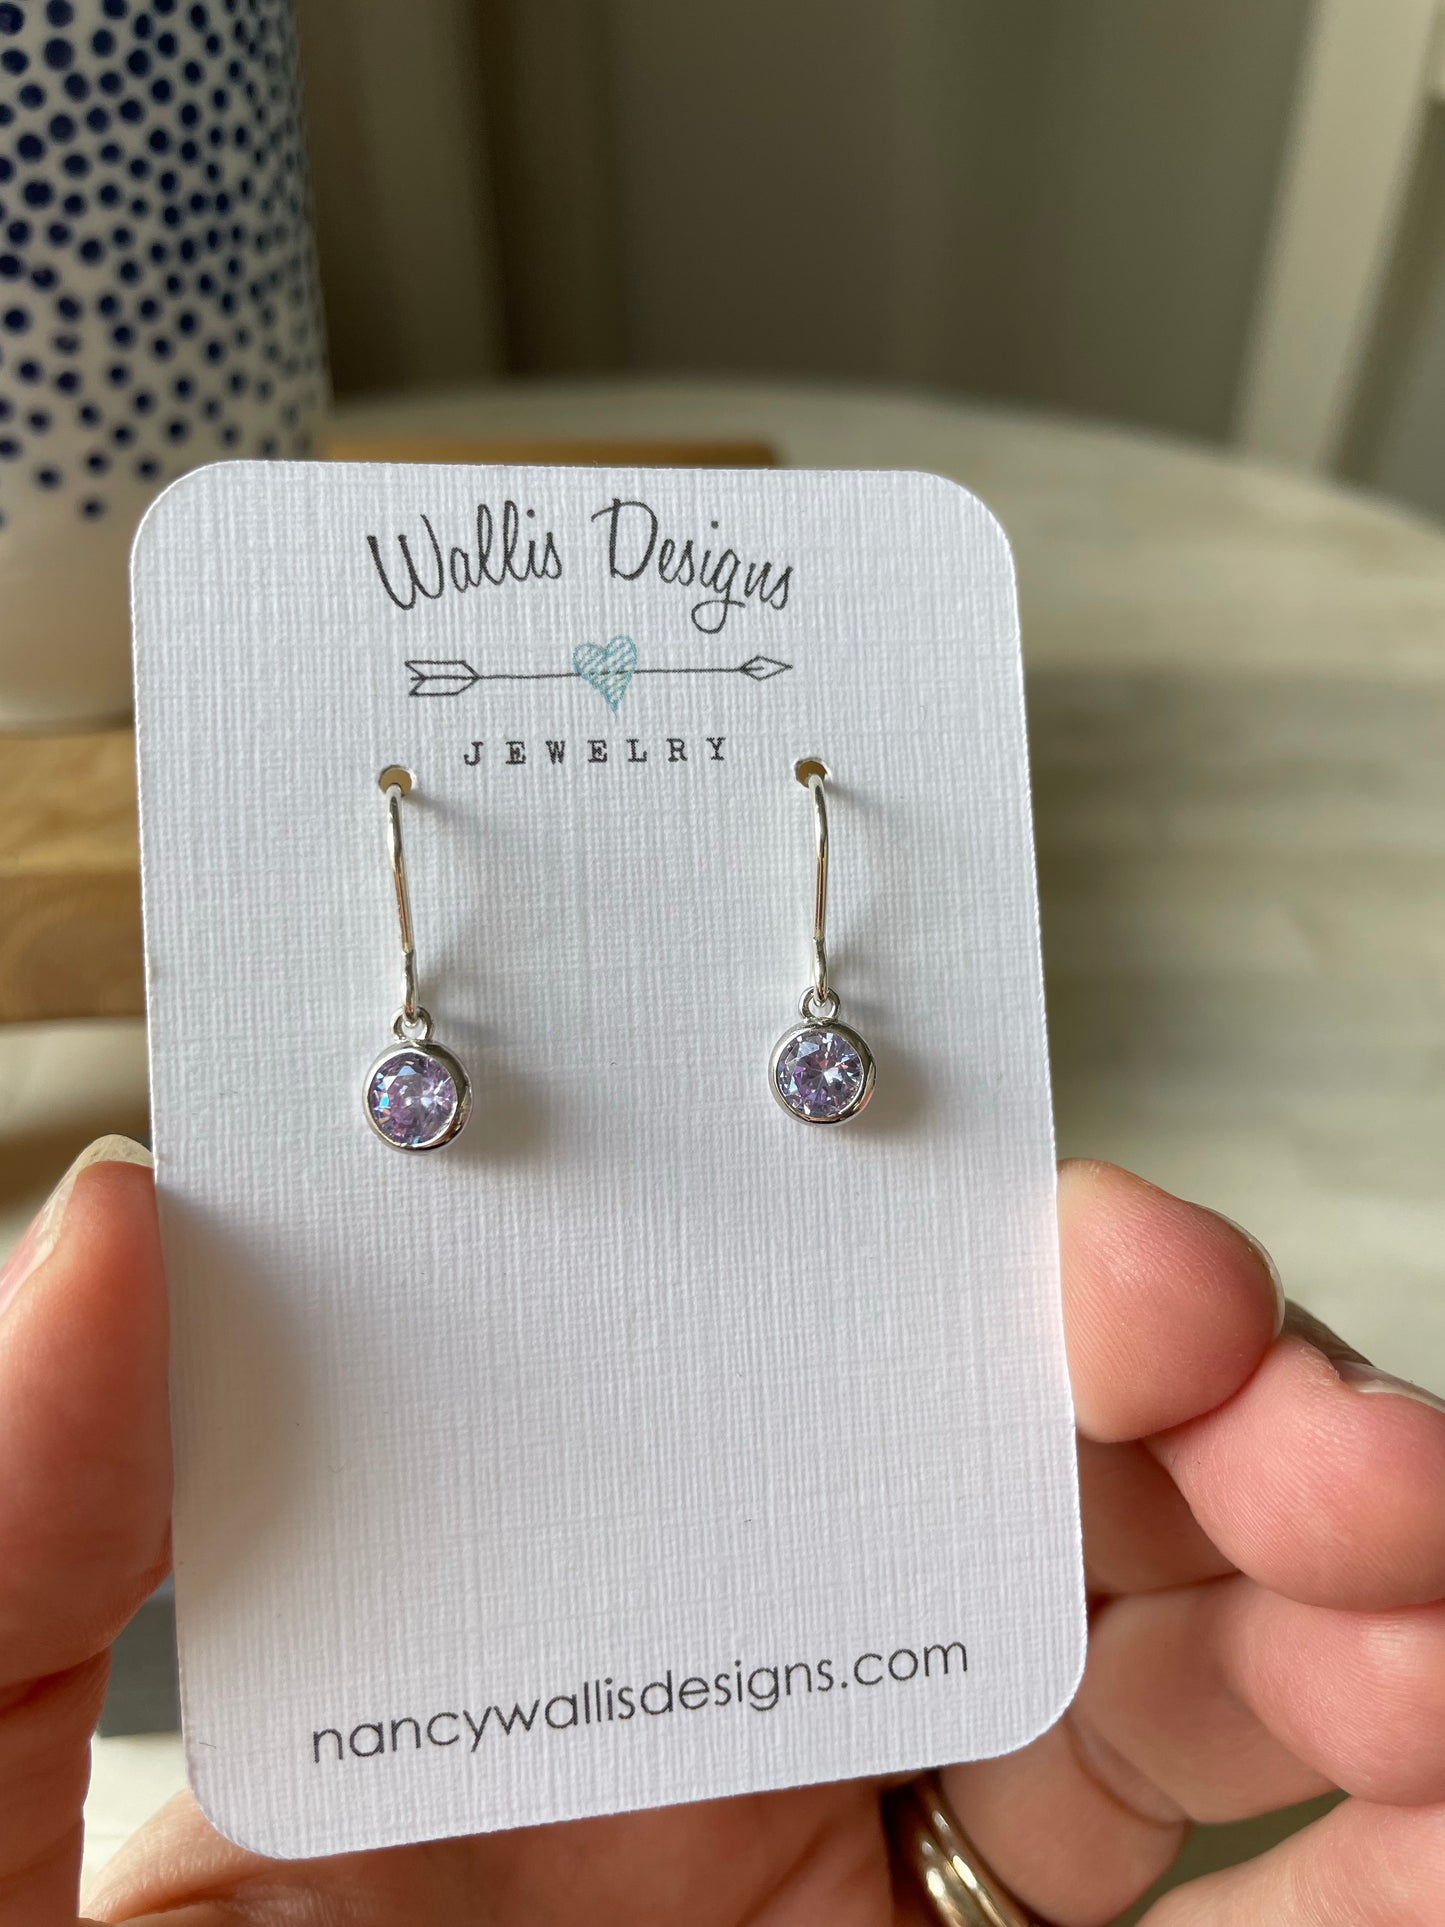 Birthstone earrings by Wallis Designs.